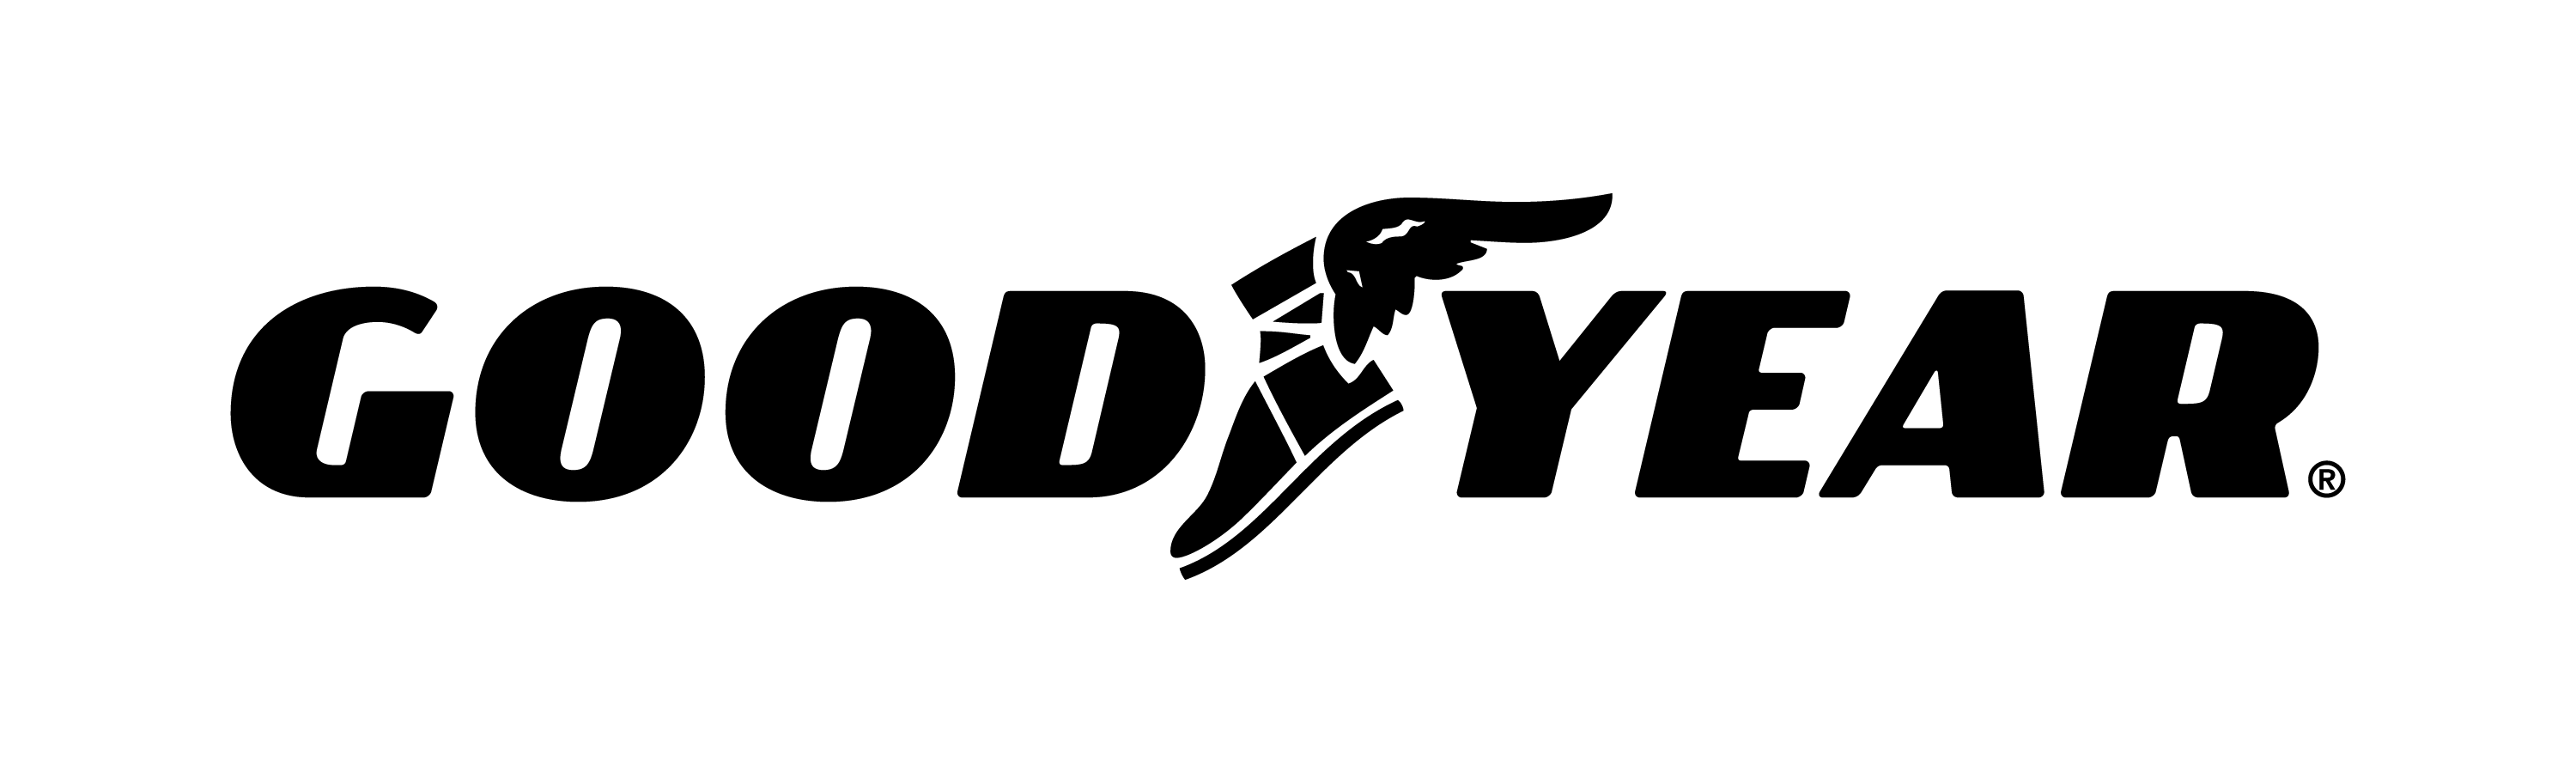 Goodyear Logo - Goodyear Logo Media Gallery